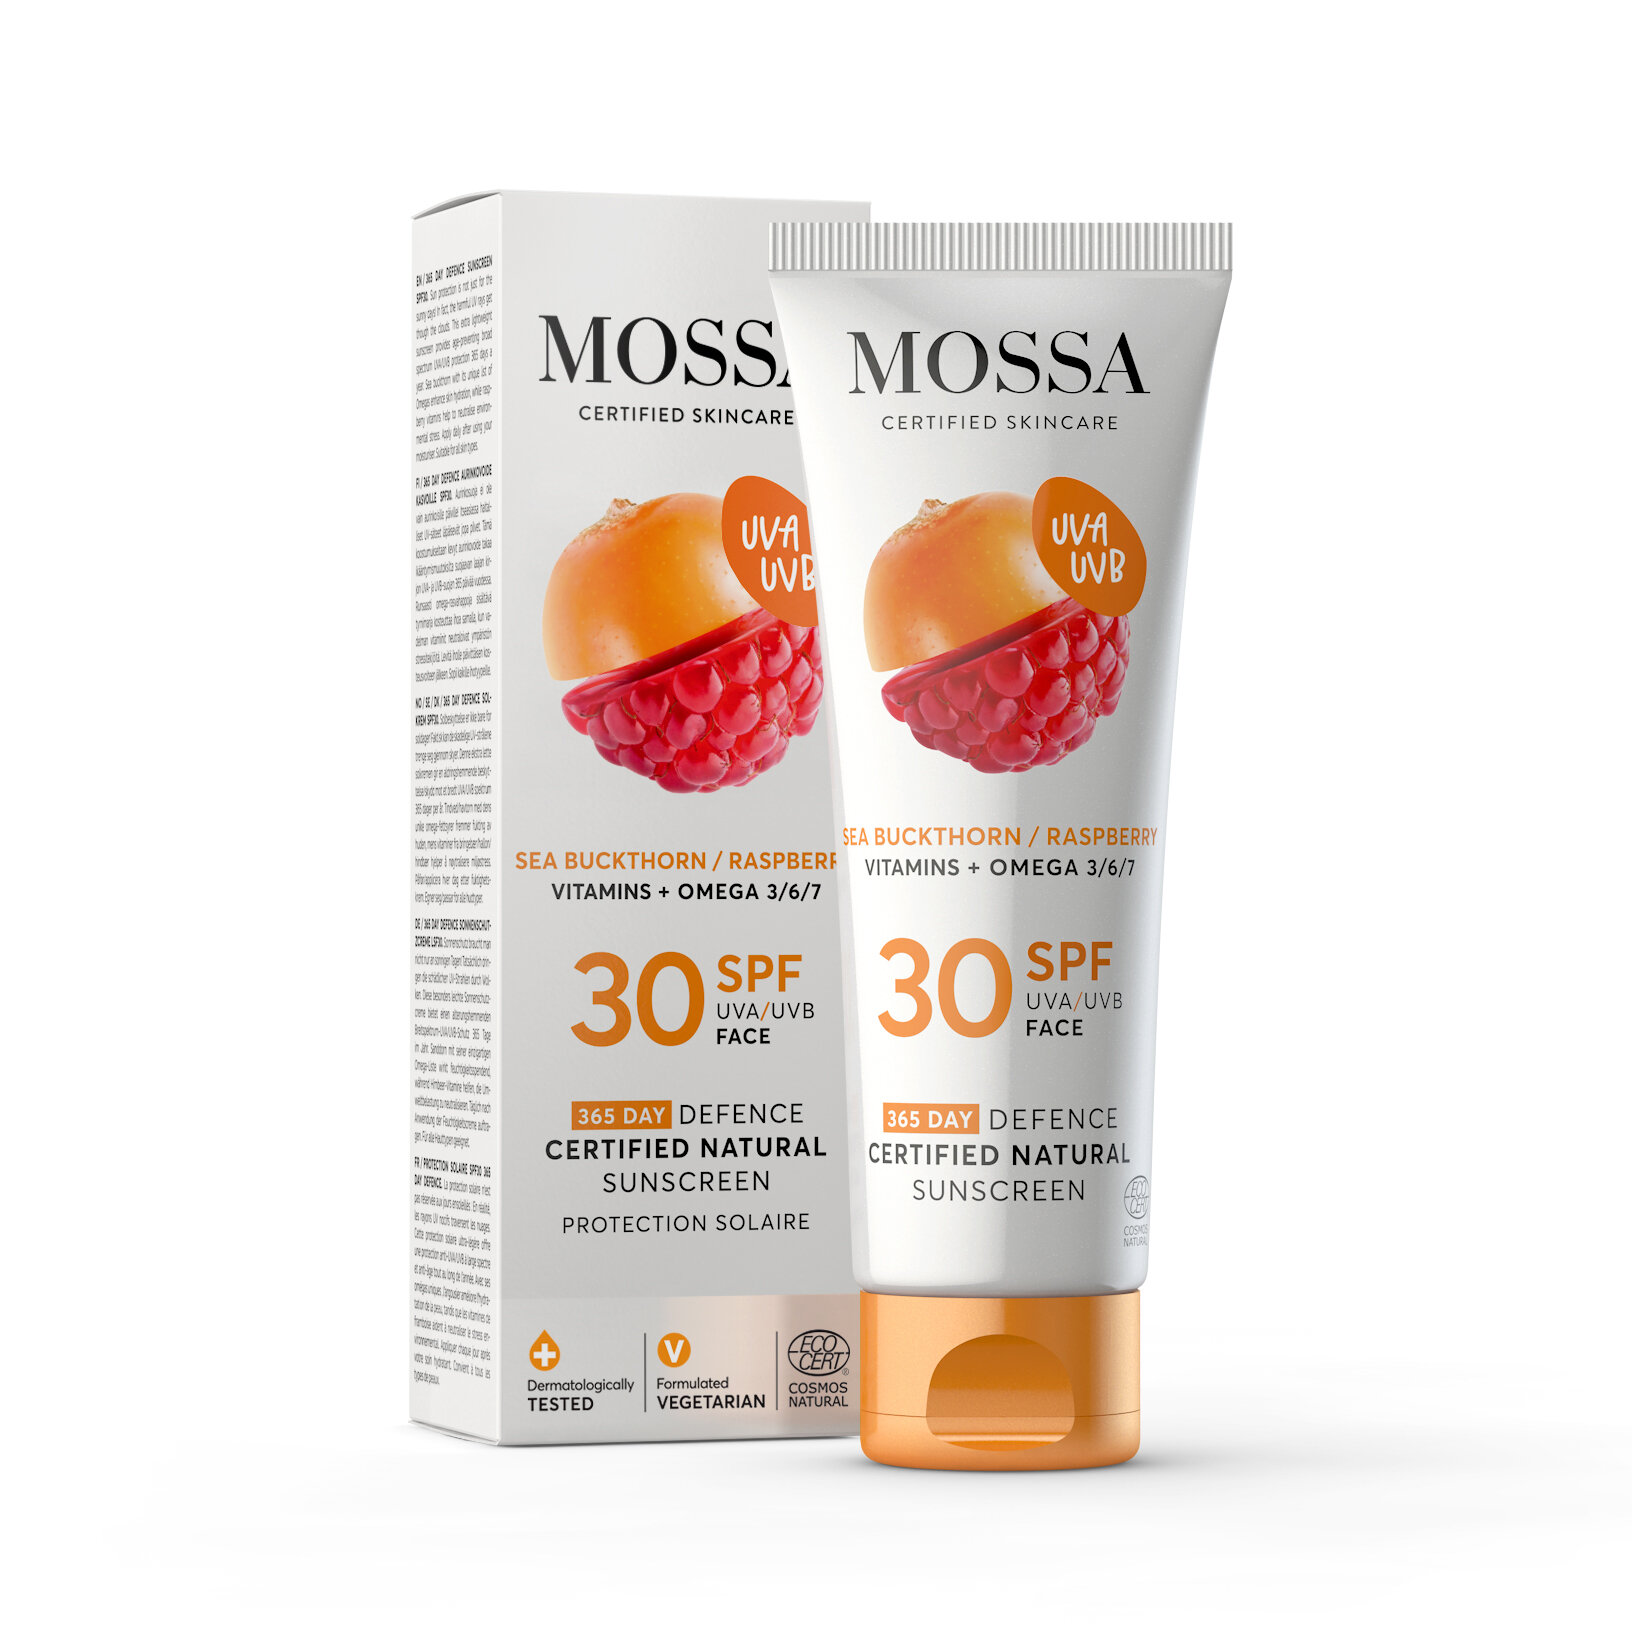 Mossa 365 Sunscreen Face SPF 30 50ml